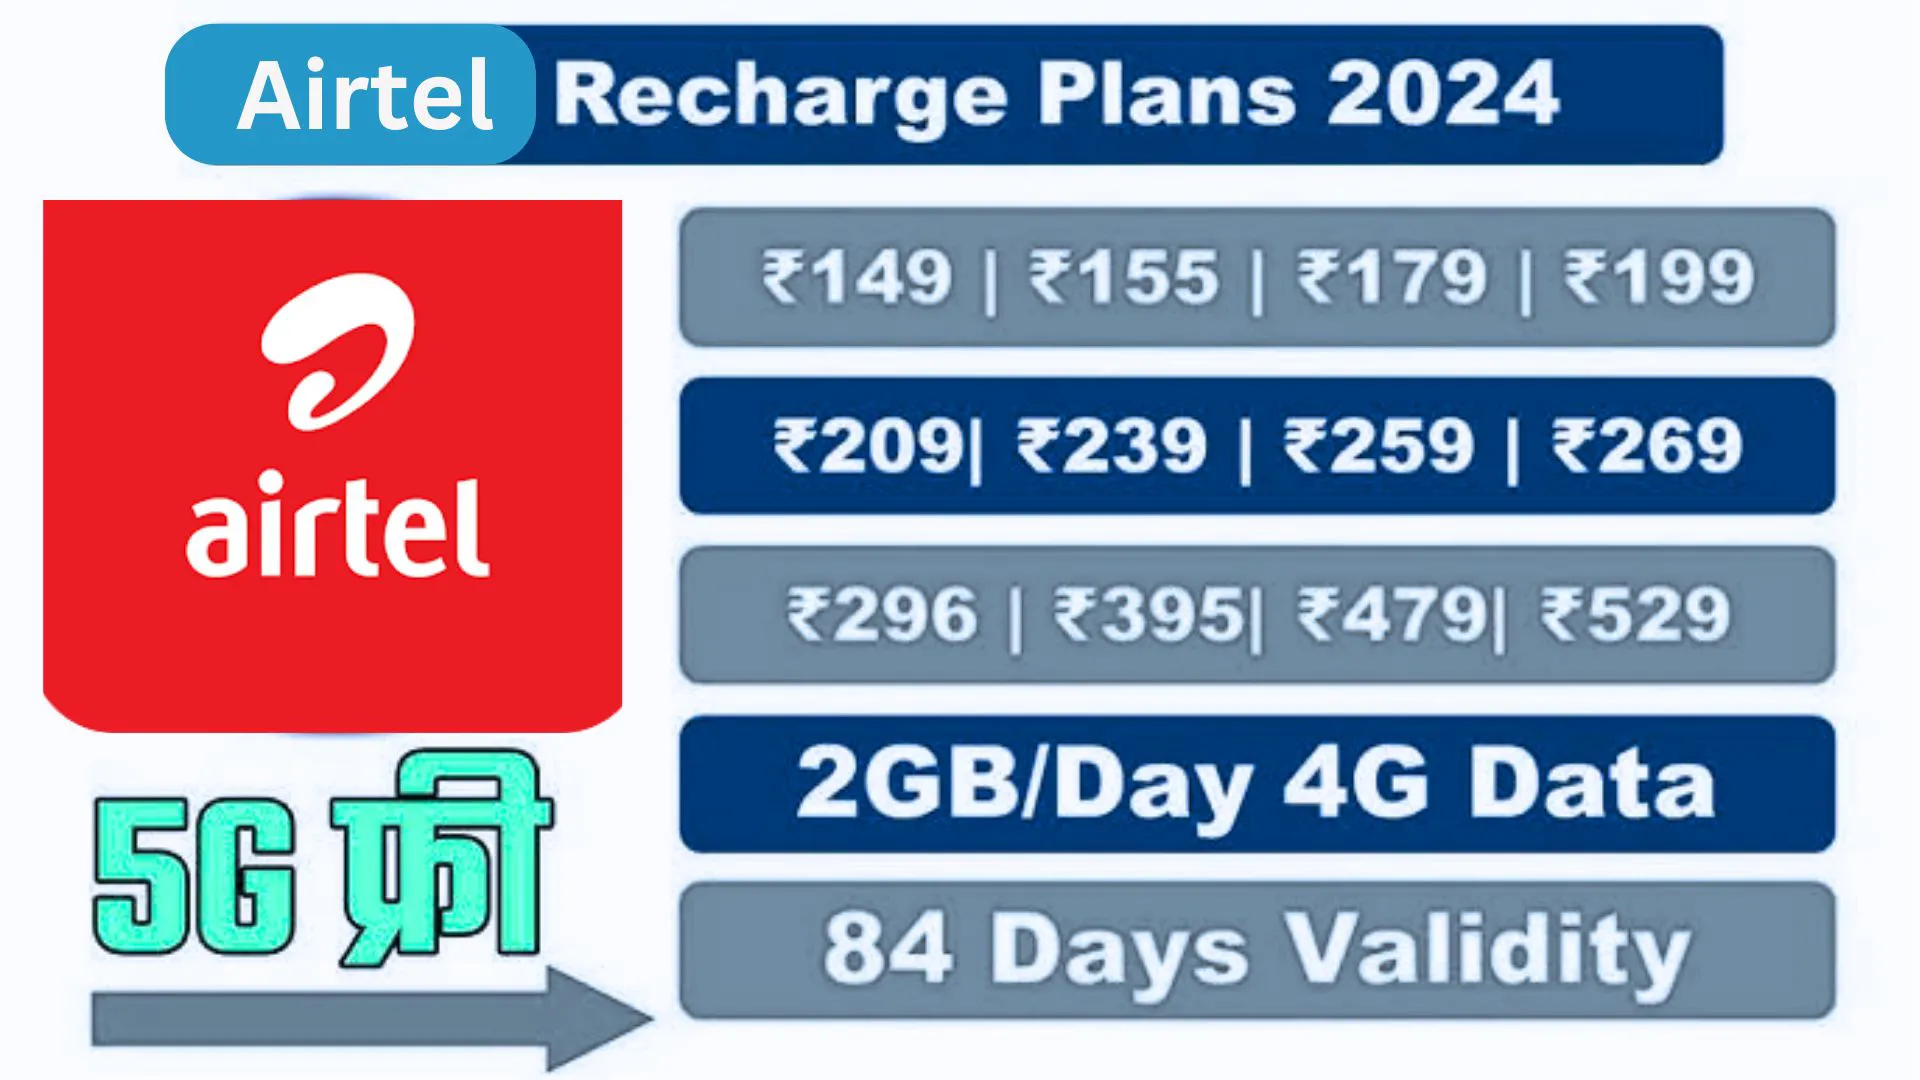 “तुम्हाला फ्री एअरटेल डेटा आणि कॉलिंग हवेय? | Airtel Recharge Plan 2024